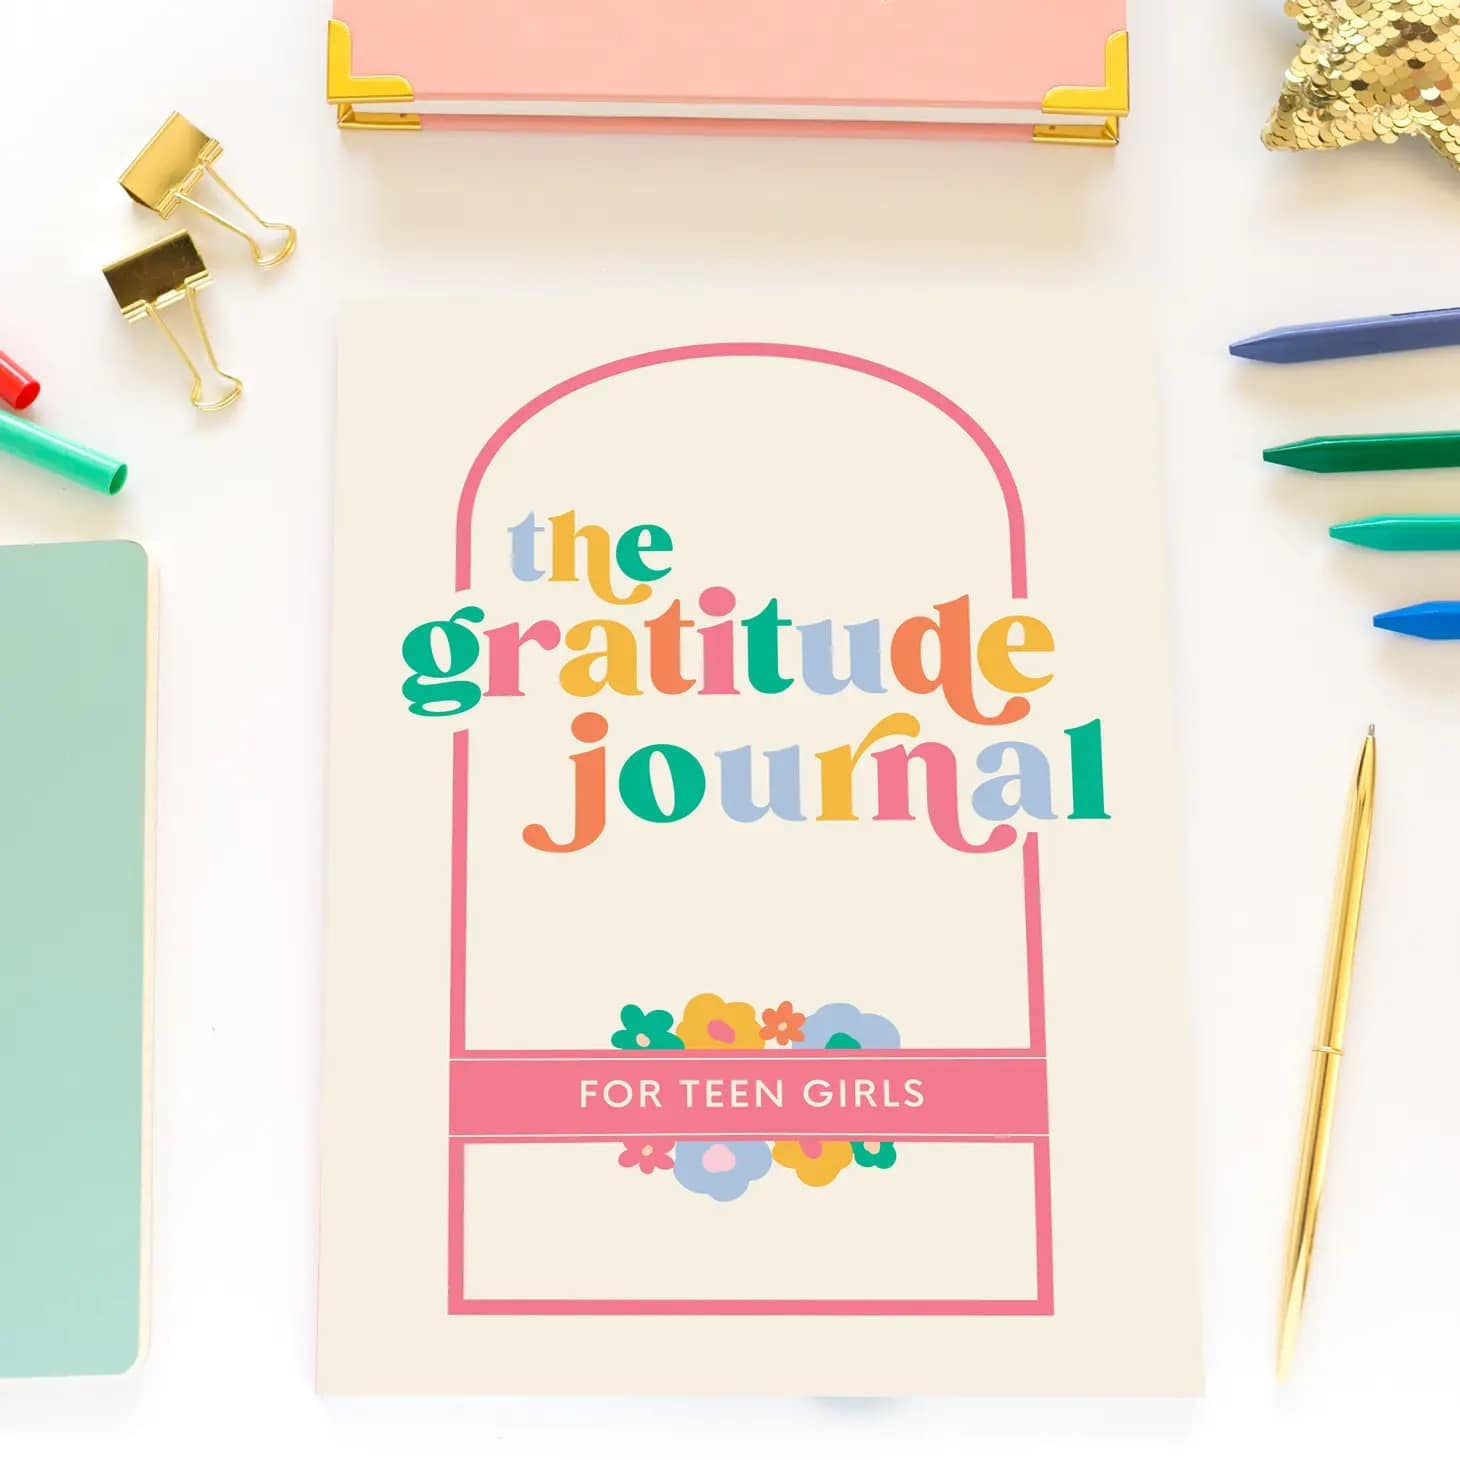 Gratitude journal for tweens/teens- Rts